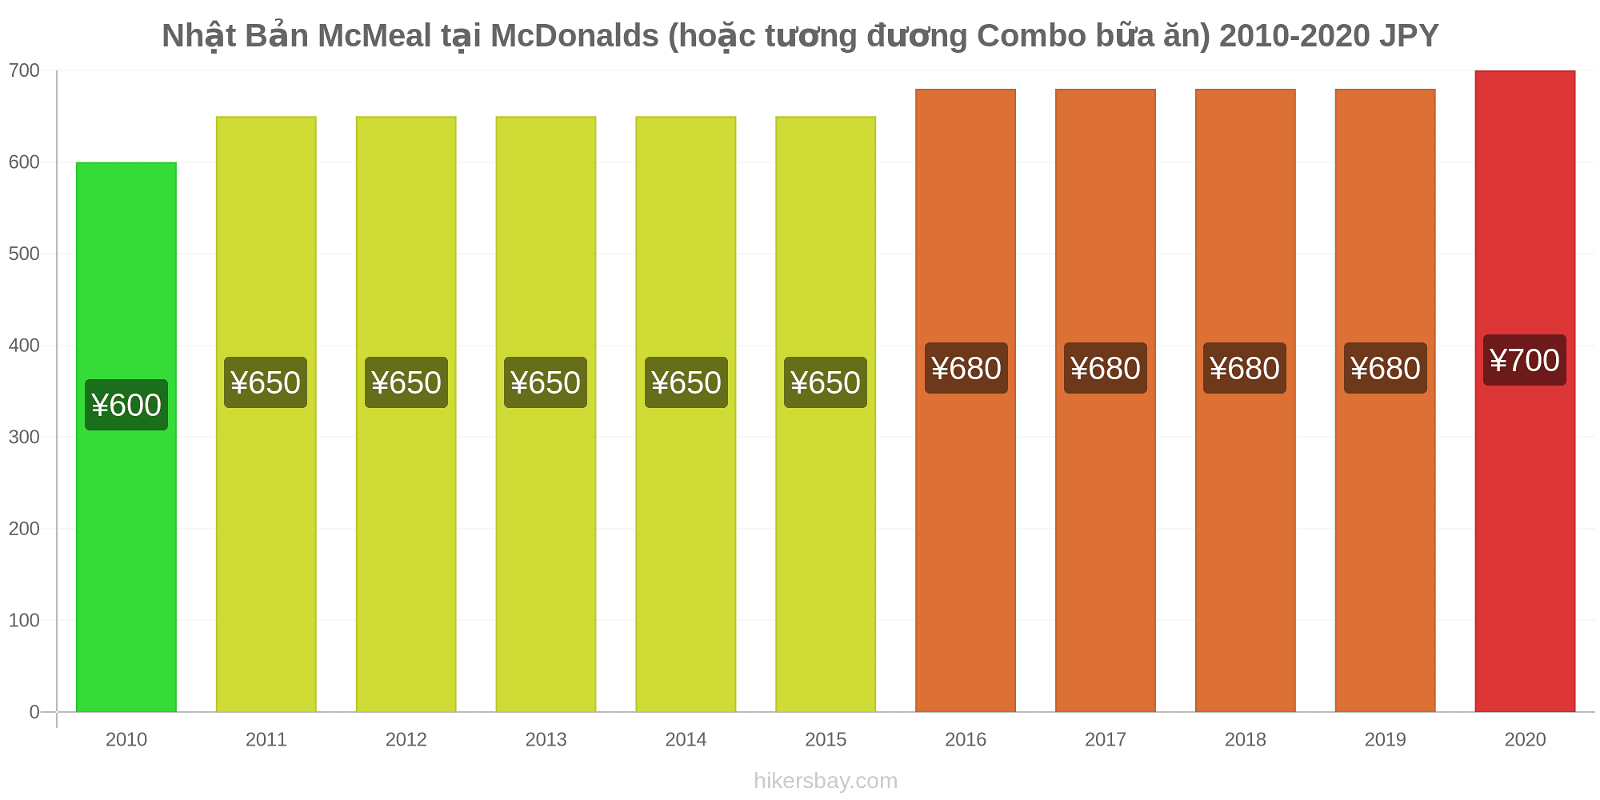 Nhật Bản thay đổi giá McMeal tại McDonalds (hoặc tương đương Combo bữa ăn) hikersbay.com